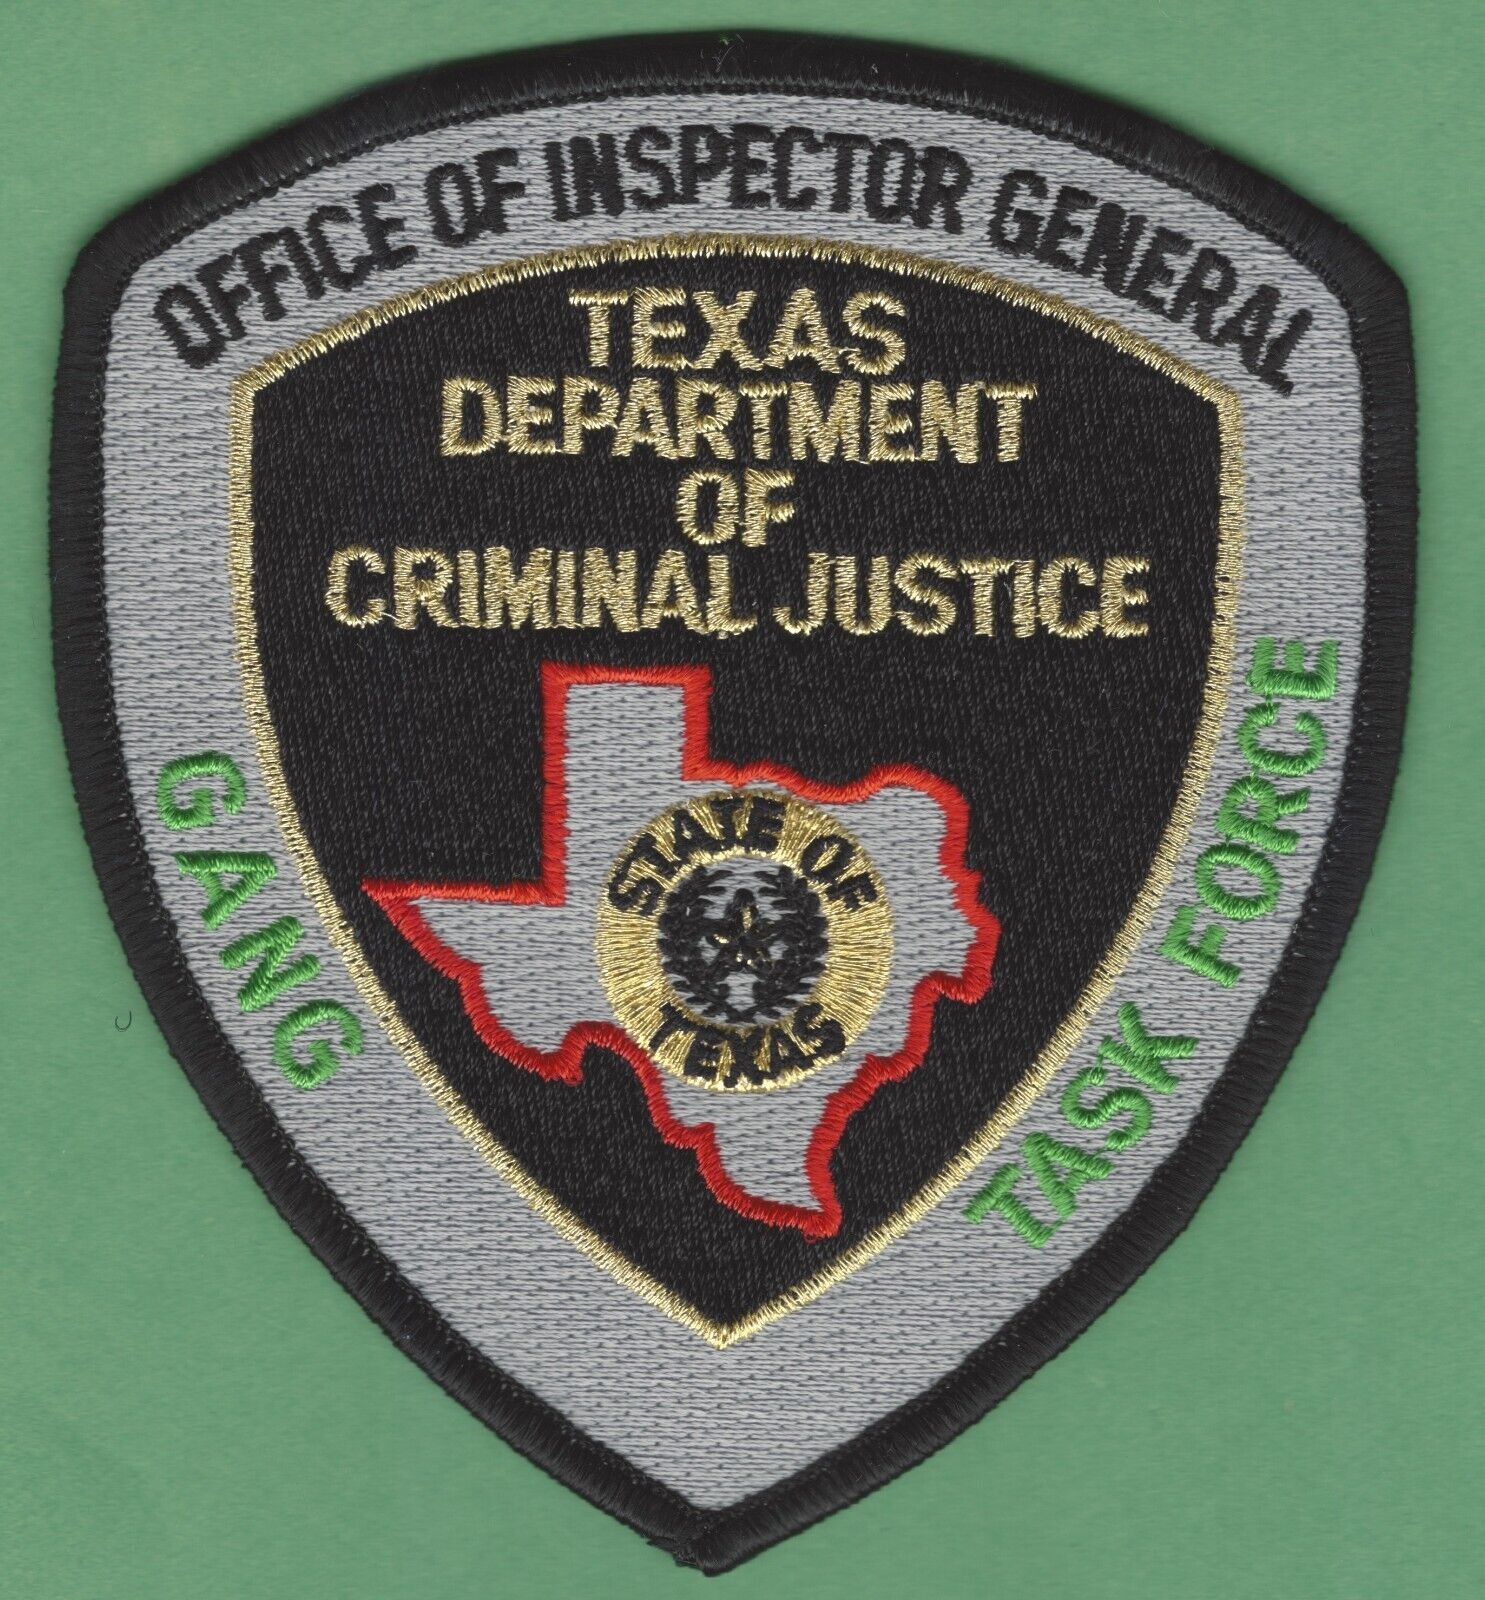 TEXAS DEPARTMENT OF CRIMINAL JUSTICE GANG TASK FORCE SHOULDER PATCH